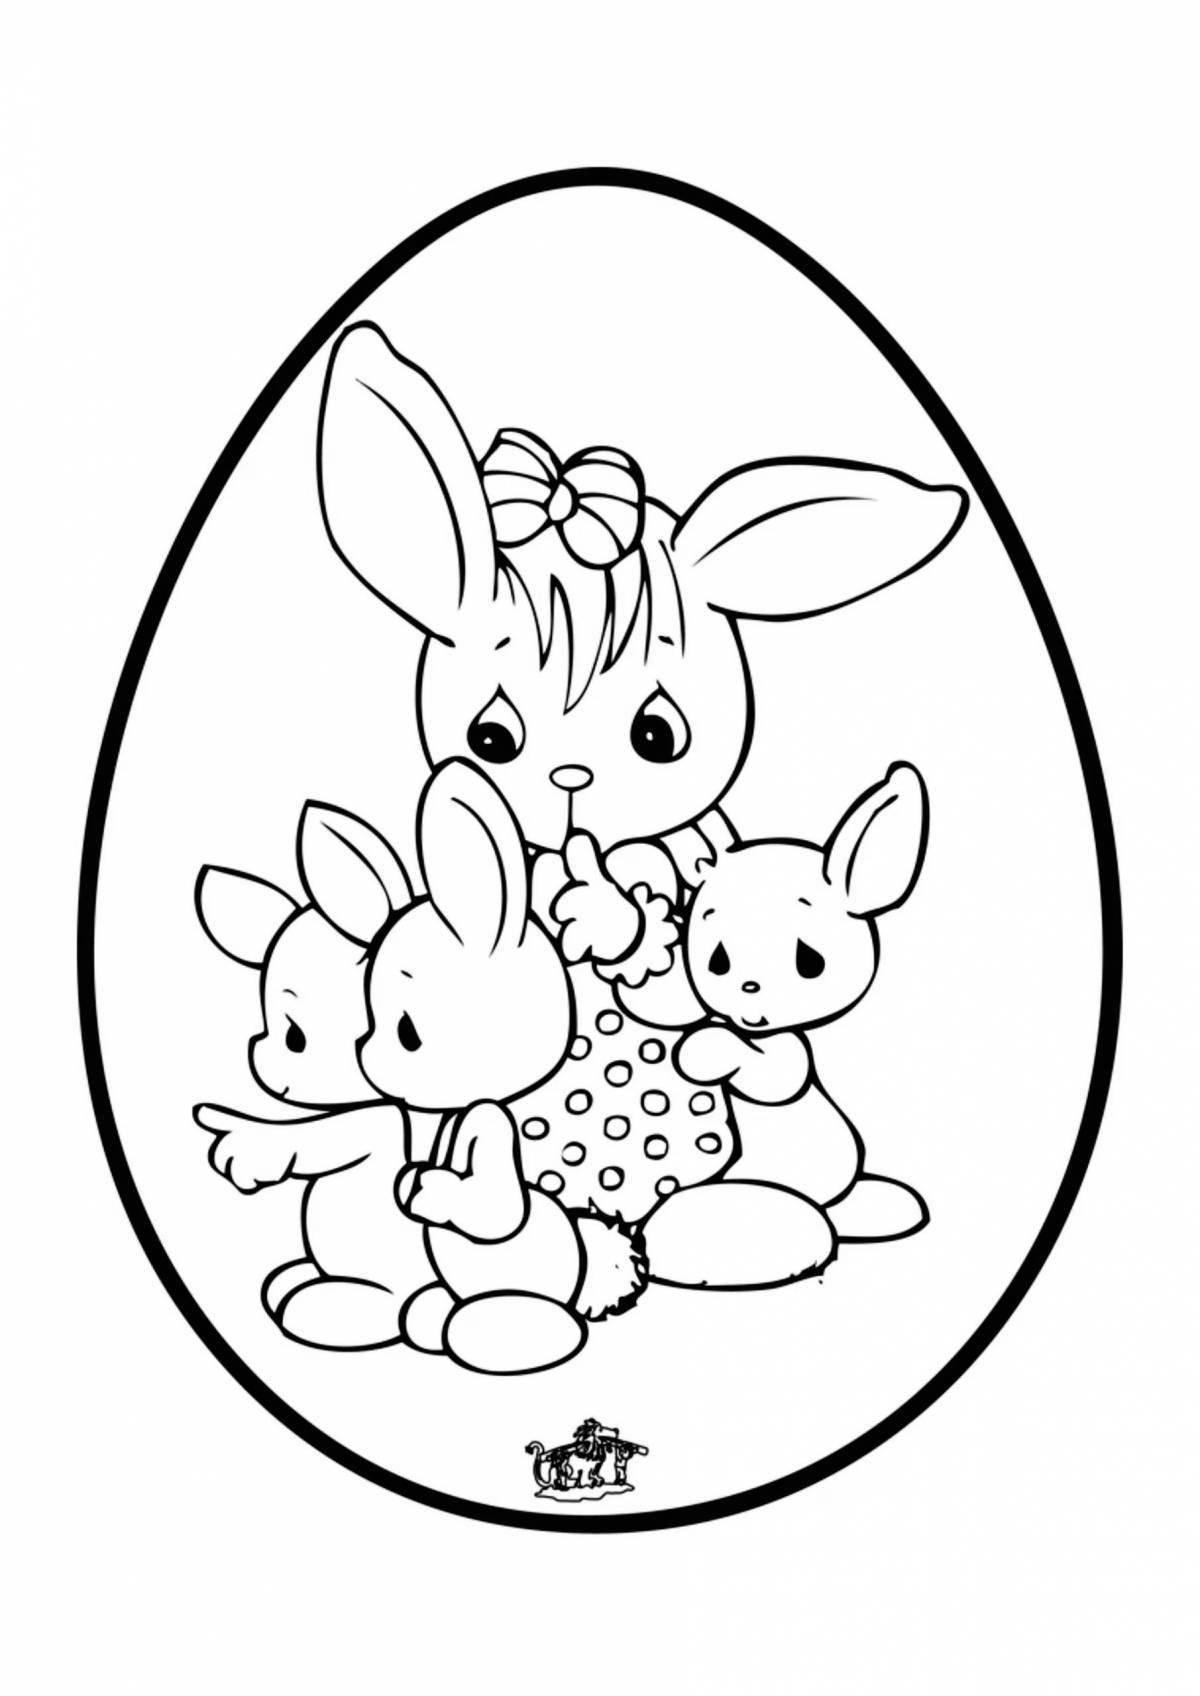 Привлекательный рисунок кролика для детей